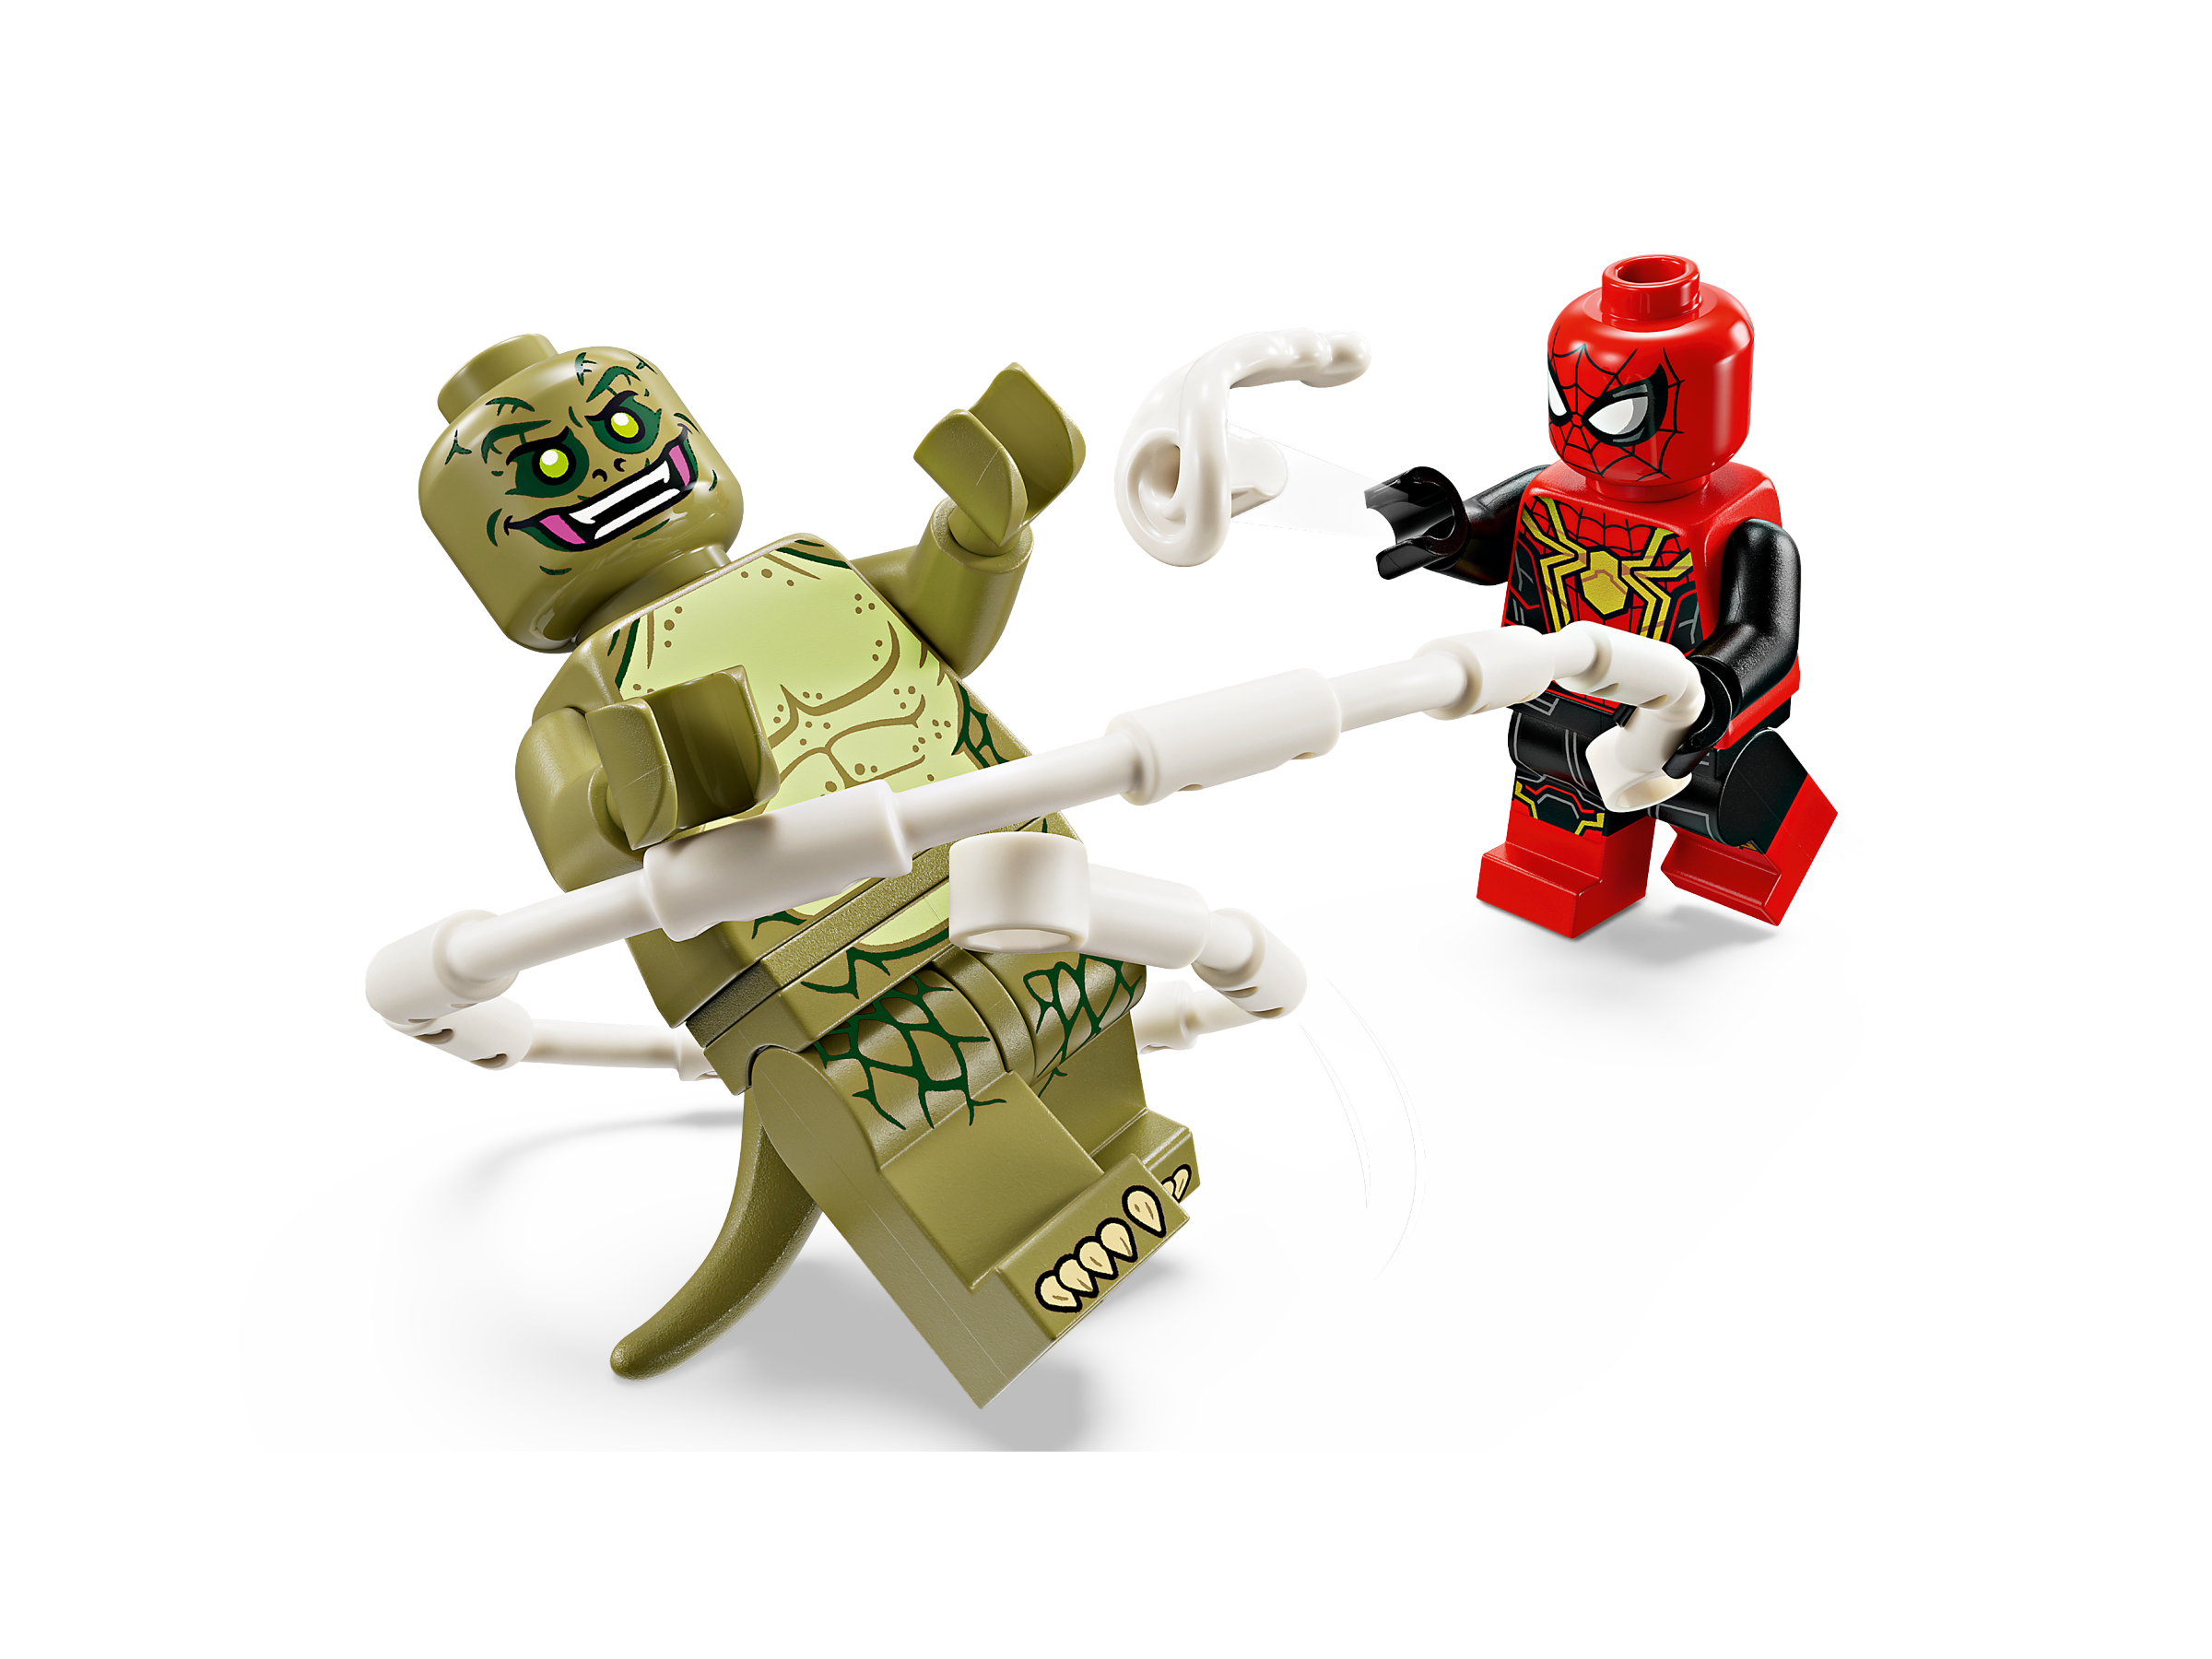 76280 - LEGO® Marvel - Spider-Man contre l'Homme-Sable : la